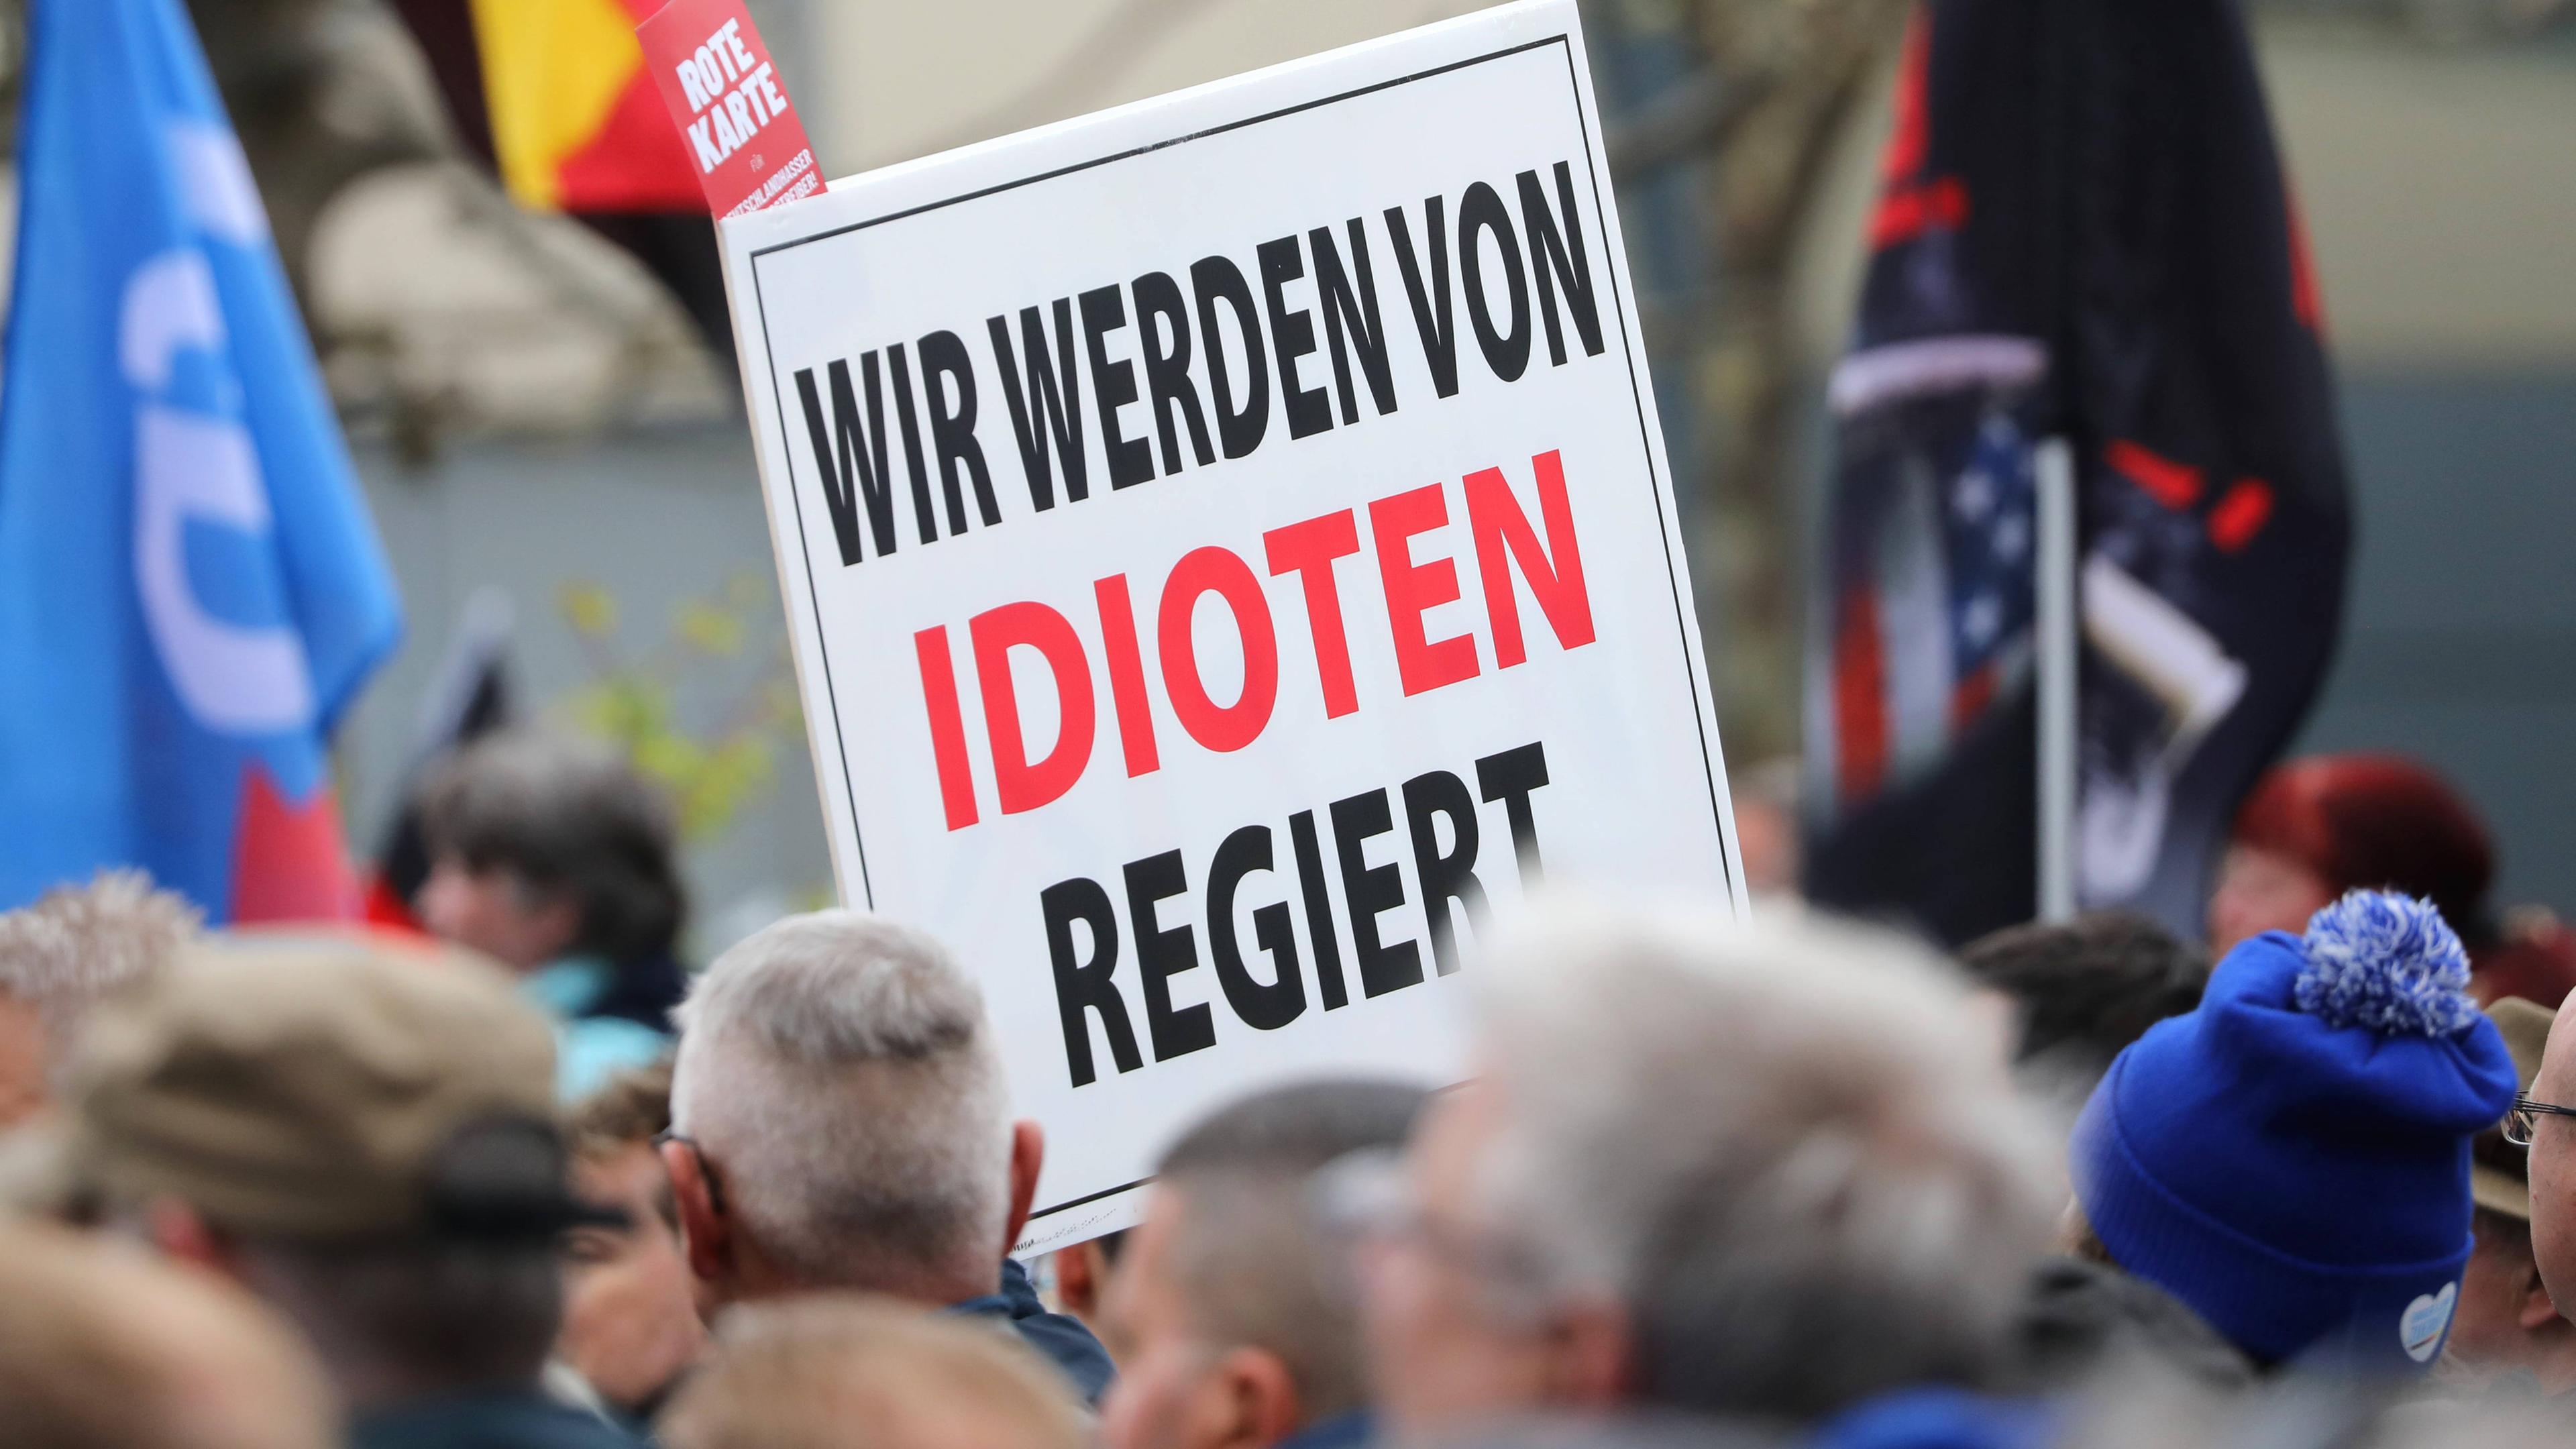 Plakat mit der Aufschrift "Wir werden von Idioten regiert" auf Demonstration der AfD in Erfurt